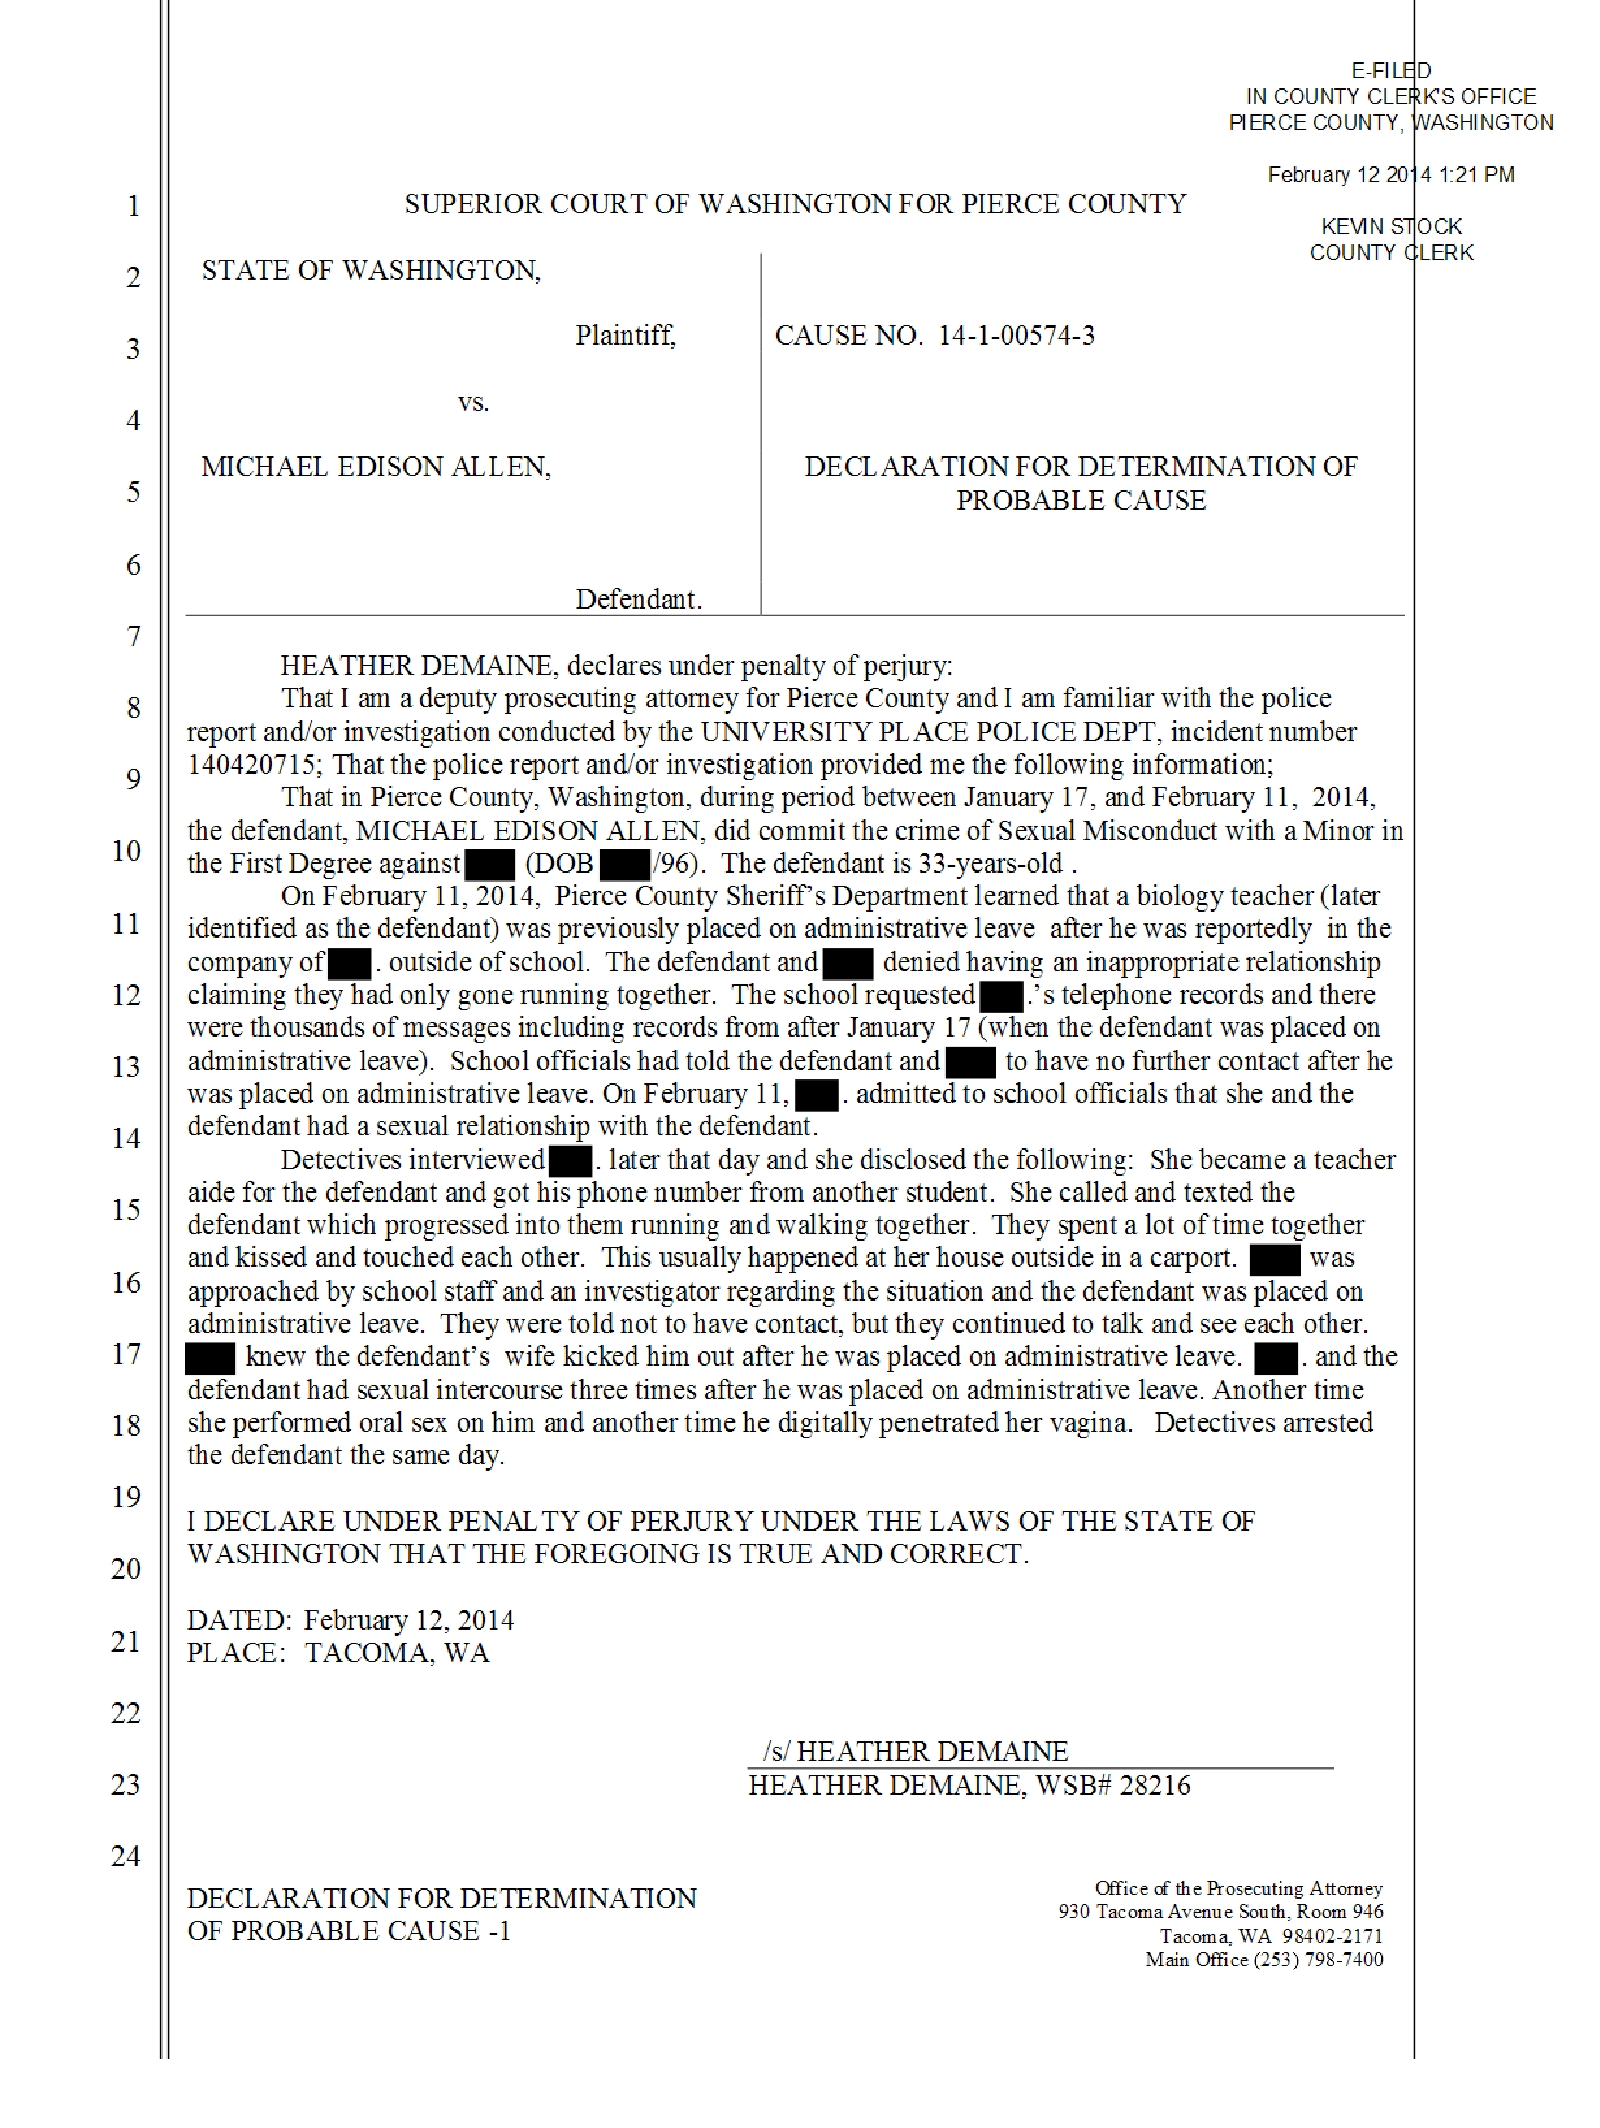 Copy of Allen Michael probable cause affidavit1.png